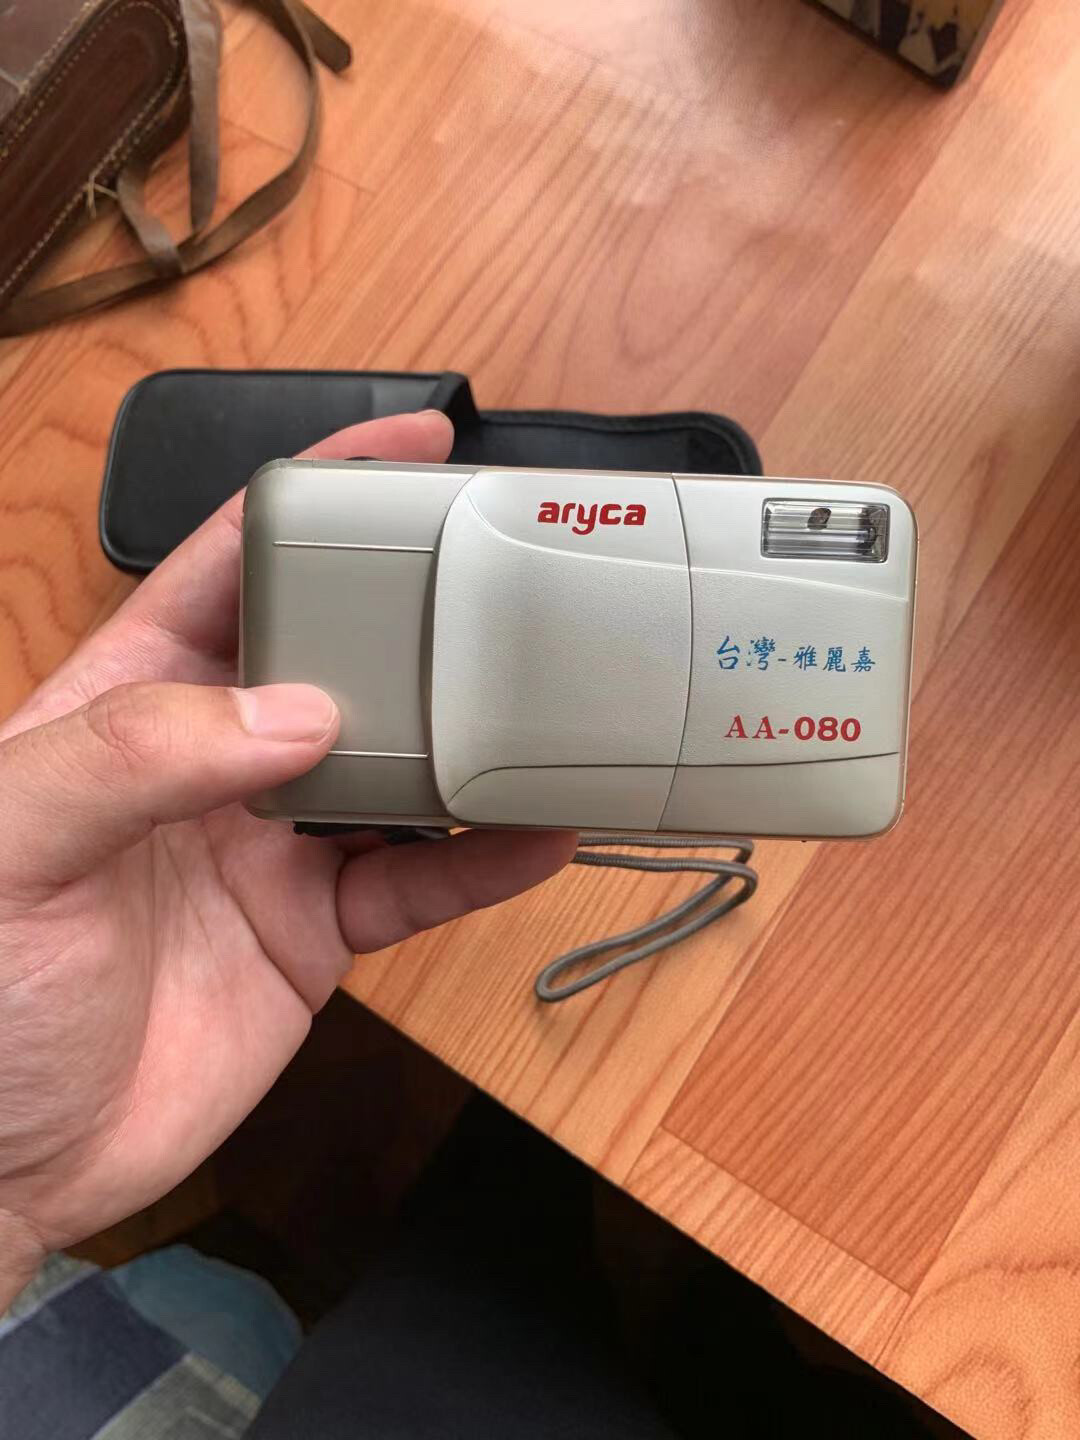 老式胶卷相机